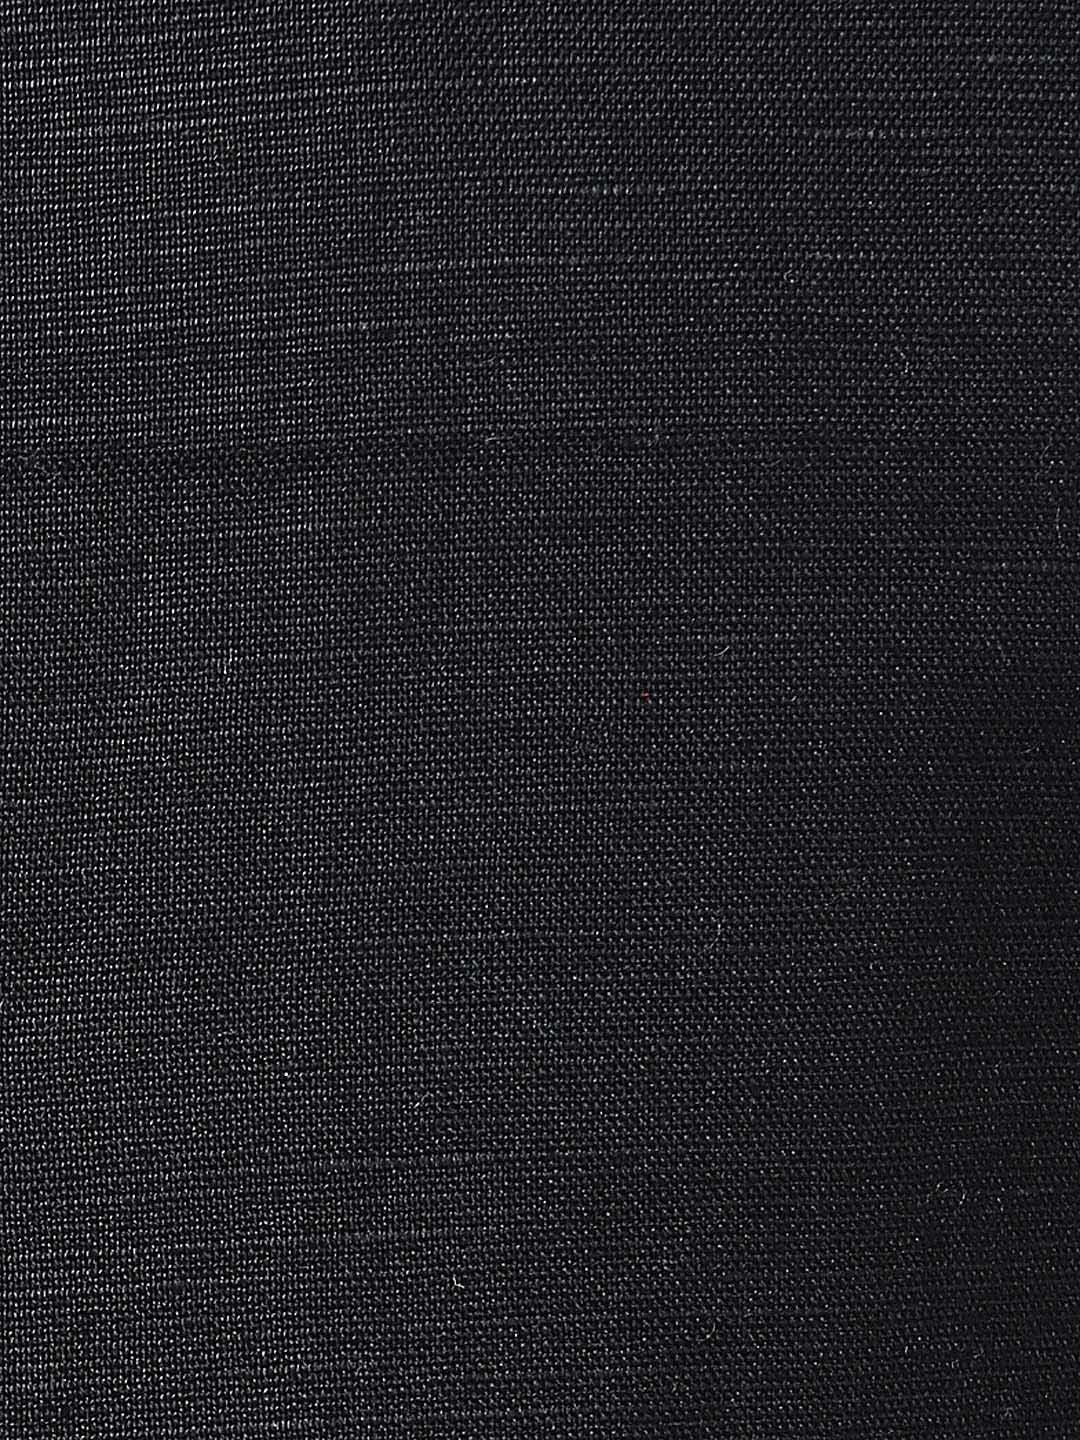 Men's Black Linen Blend Nehru Jacket  - Final Clearance Sale